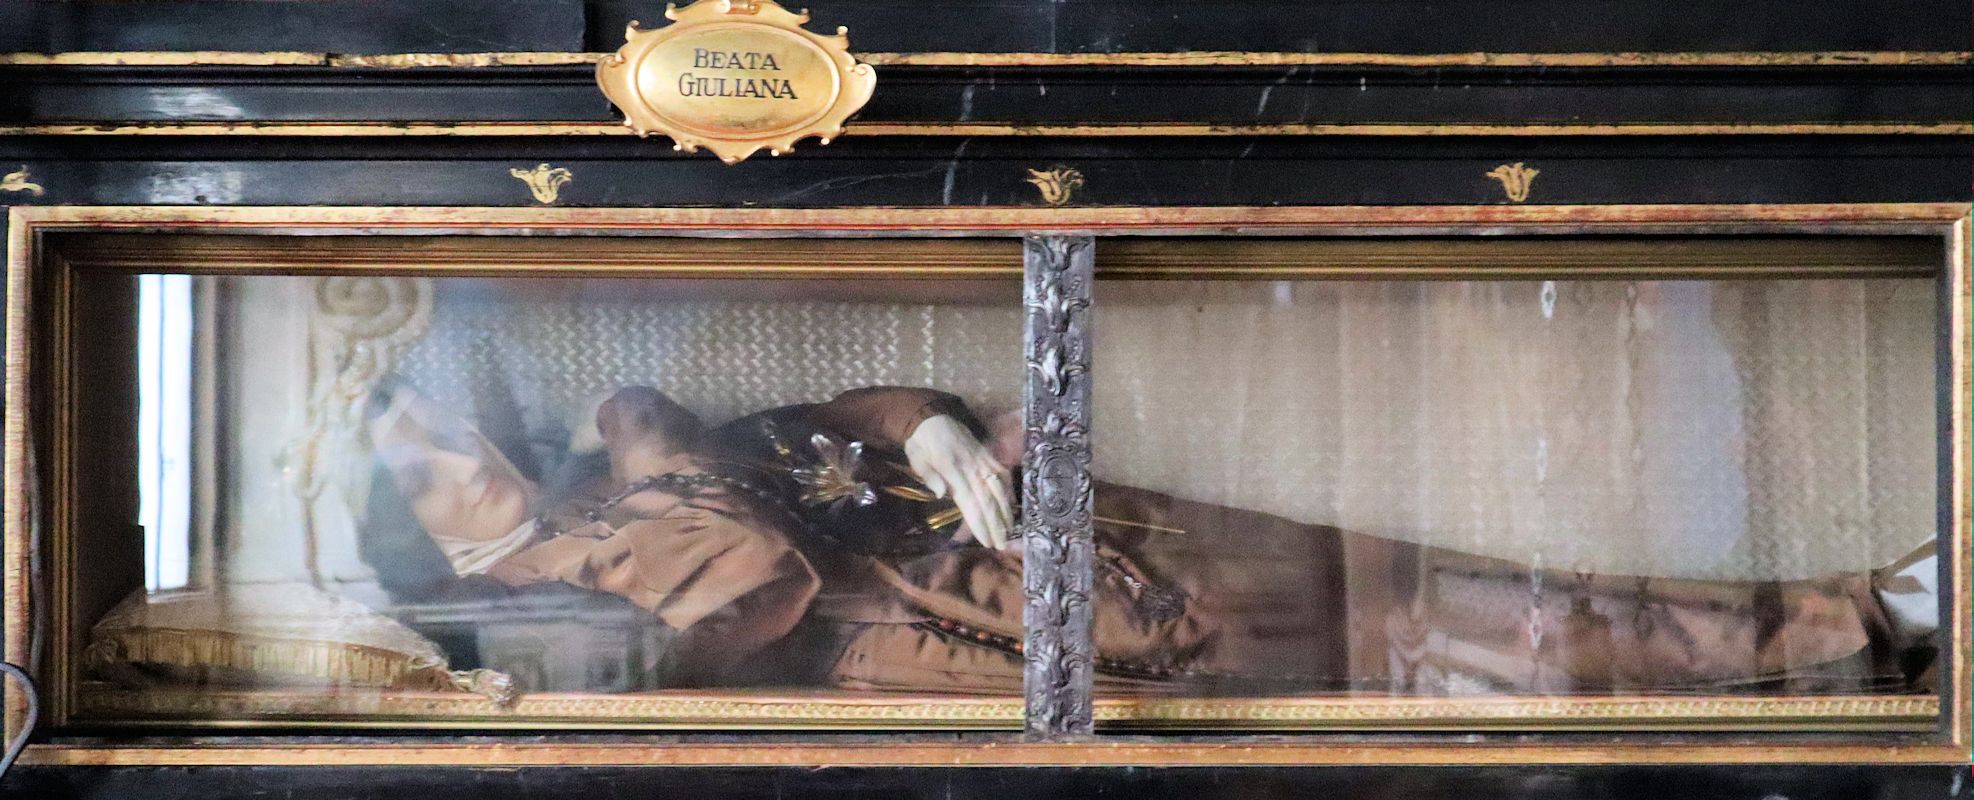 Julianas Liegefigur im Sanktuarium Santa Maria del Monte bei Varese